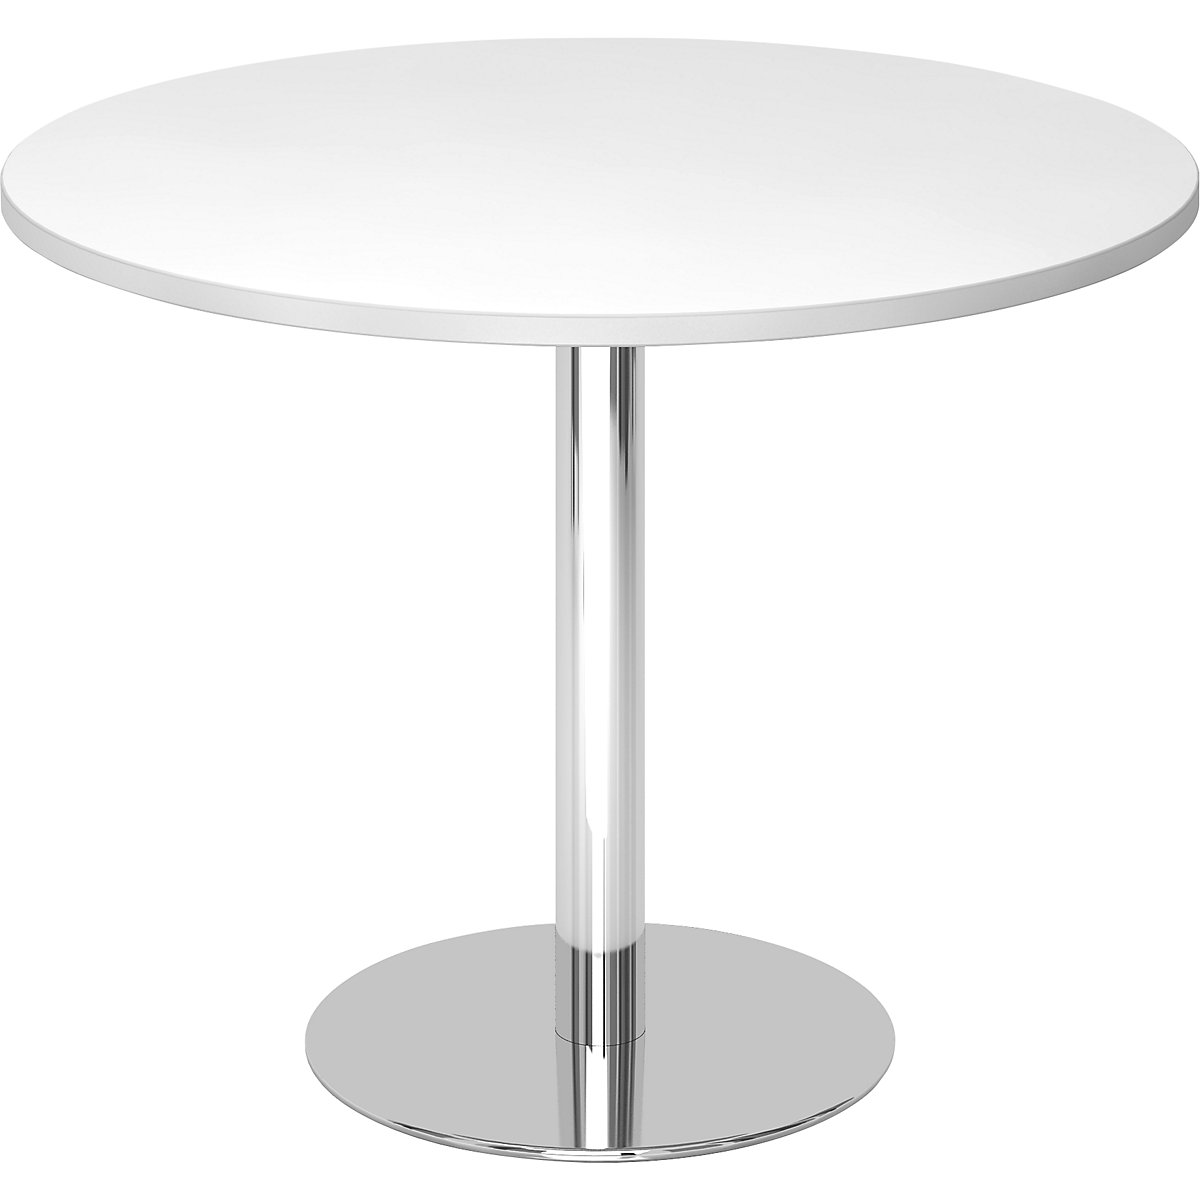 Konferencijski stol, Ø 1000 mm, visina 755 mm, kromirano postolje, ploča u bijeloj boji-5